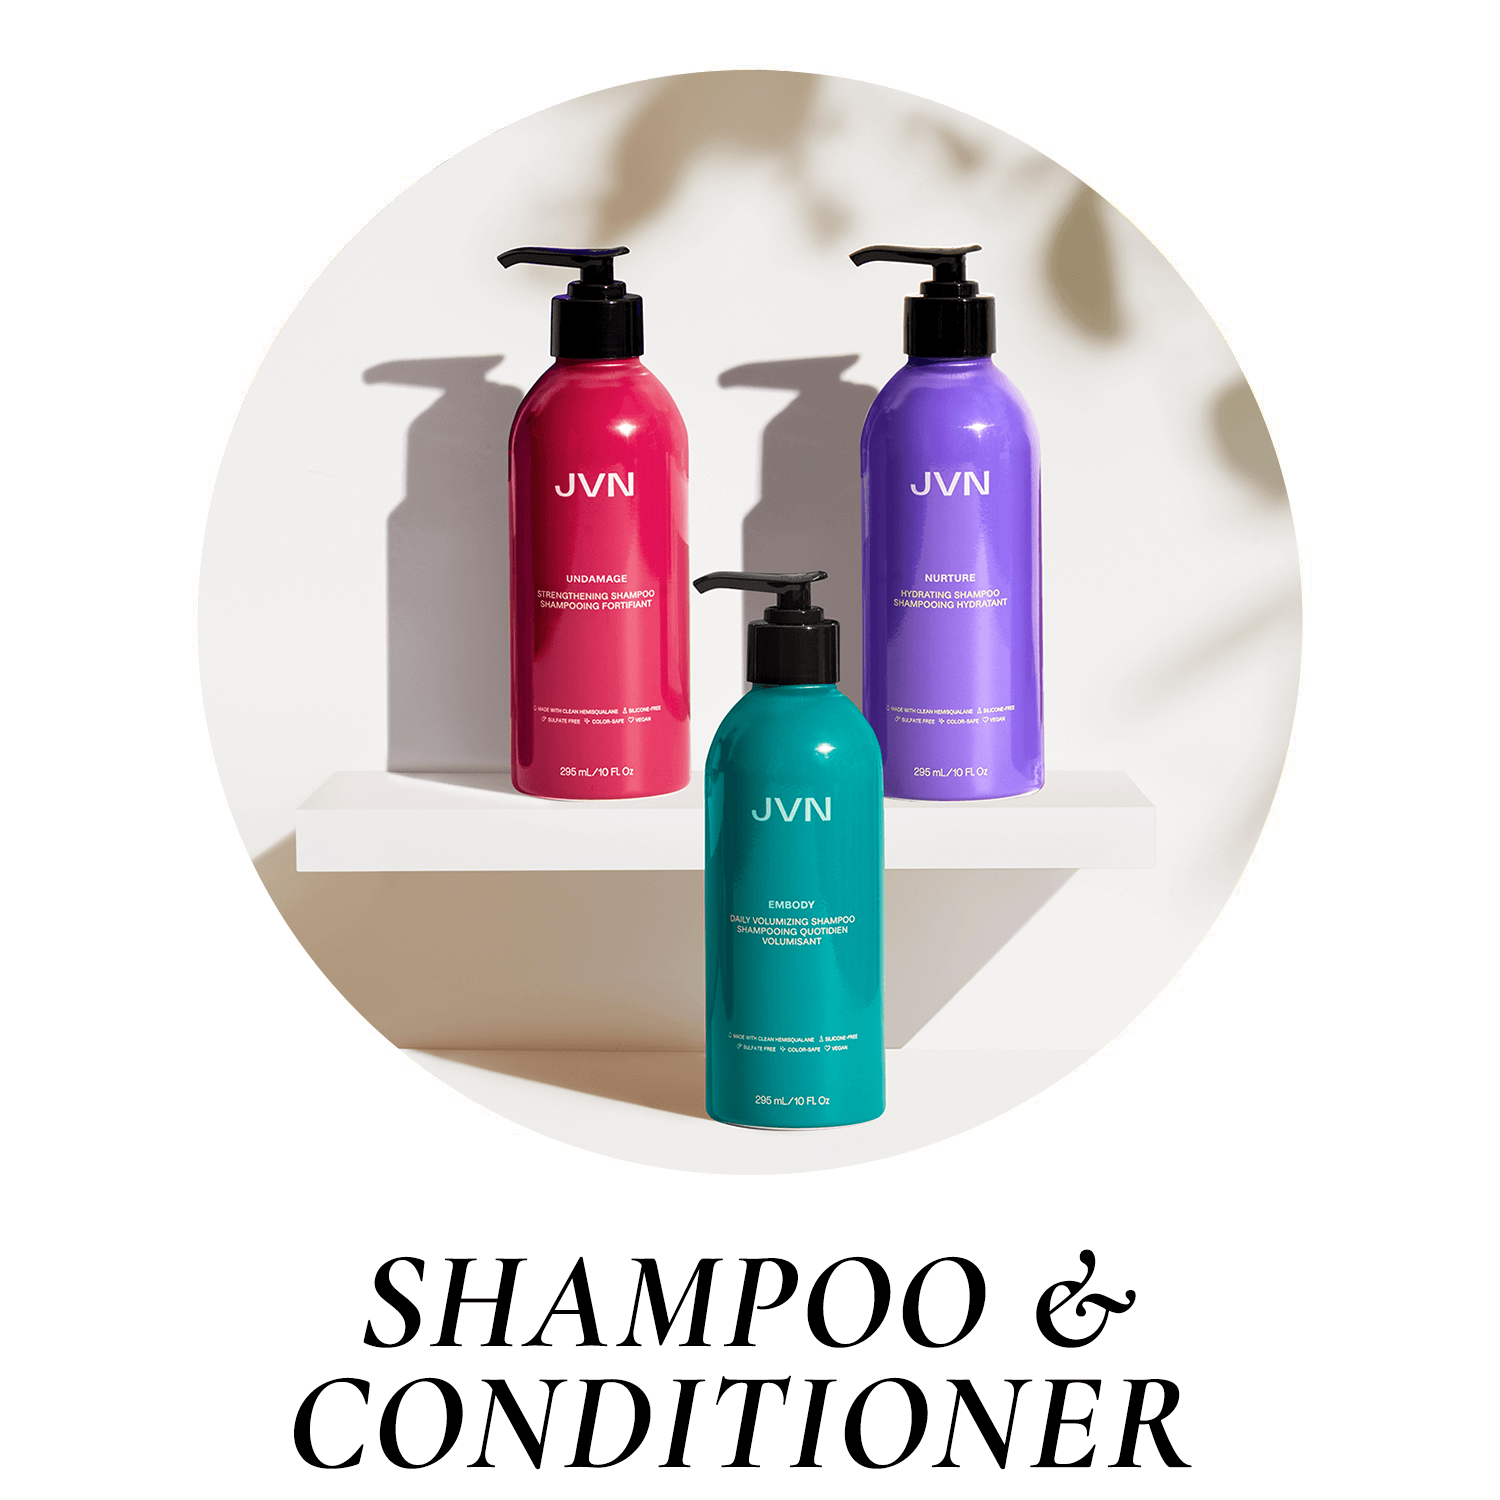 JVN Shampoo & conditioner